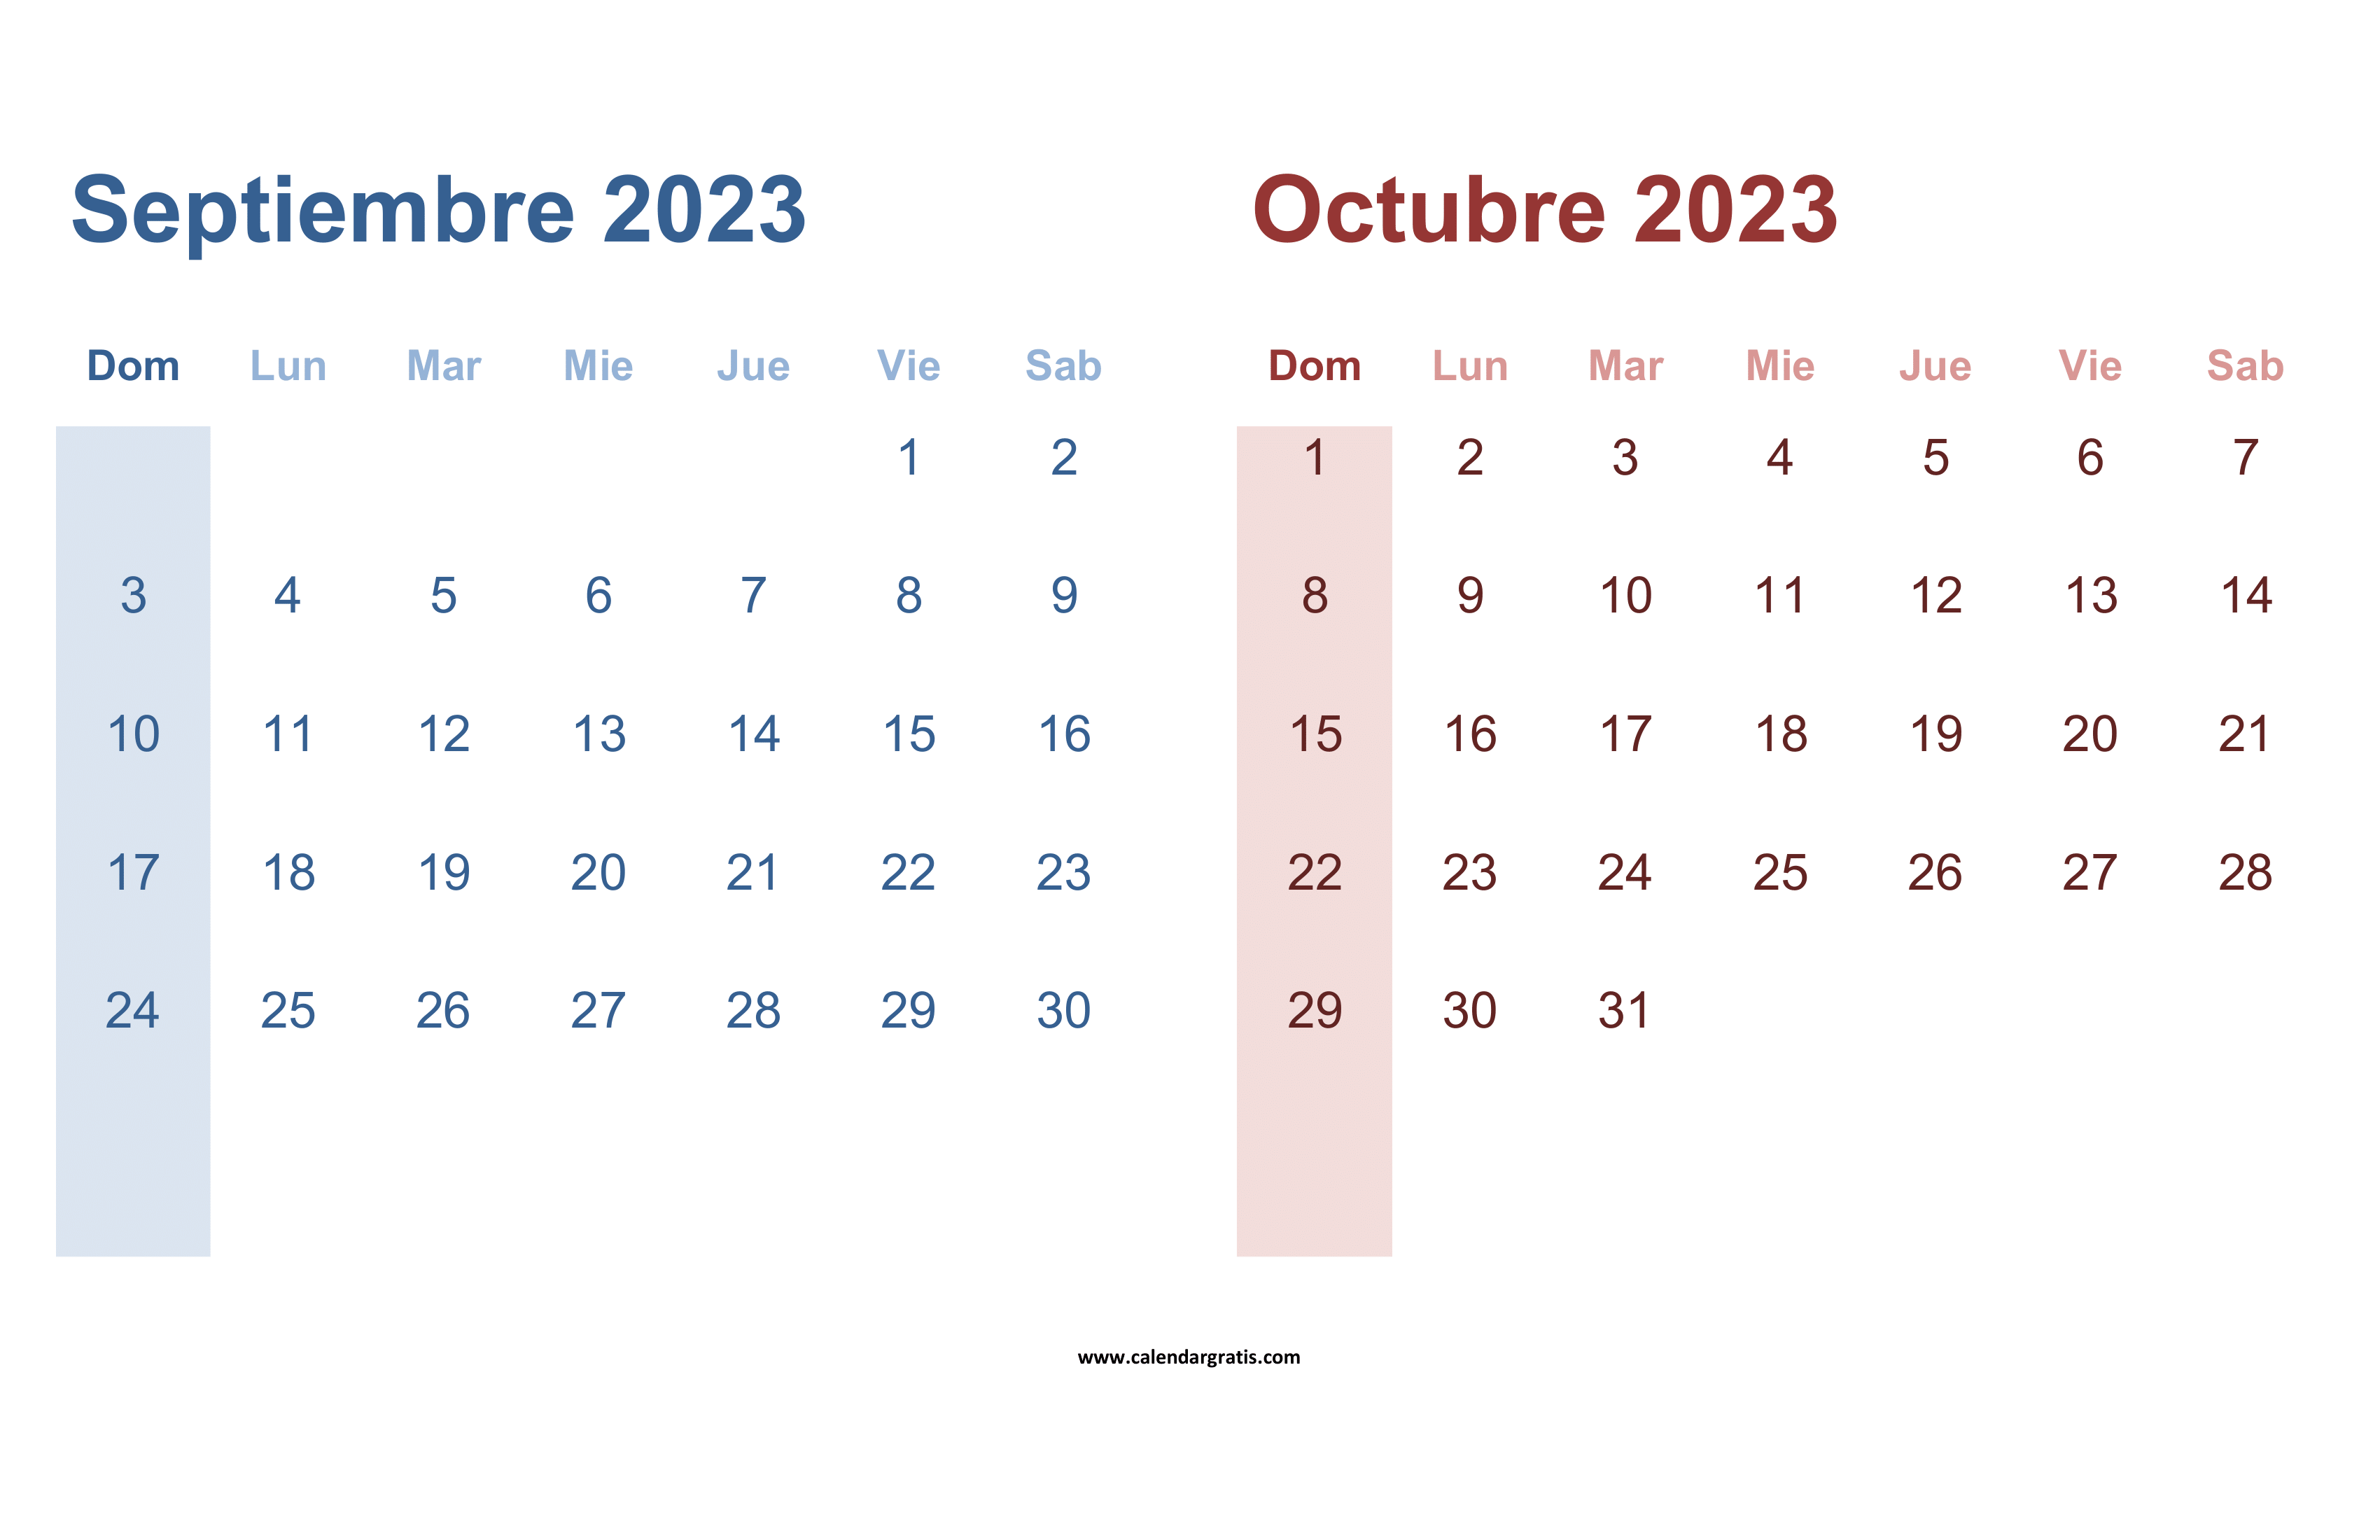 Un 'Calendario Septiembre Octubre 2023' detallado y bien organizado, ideal para planificar y programar actividades.